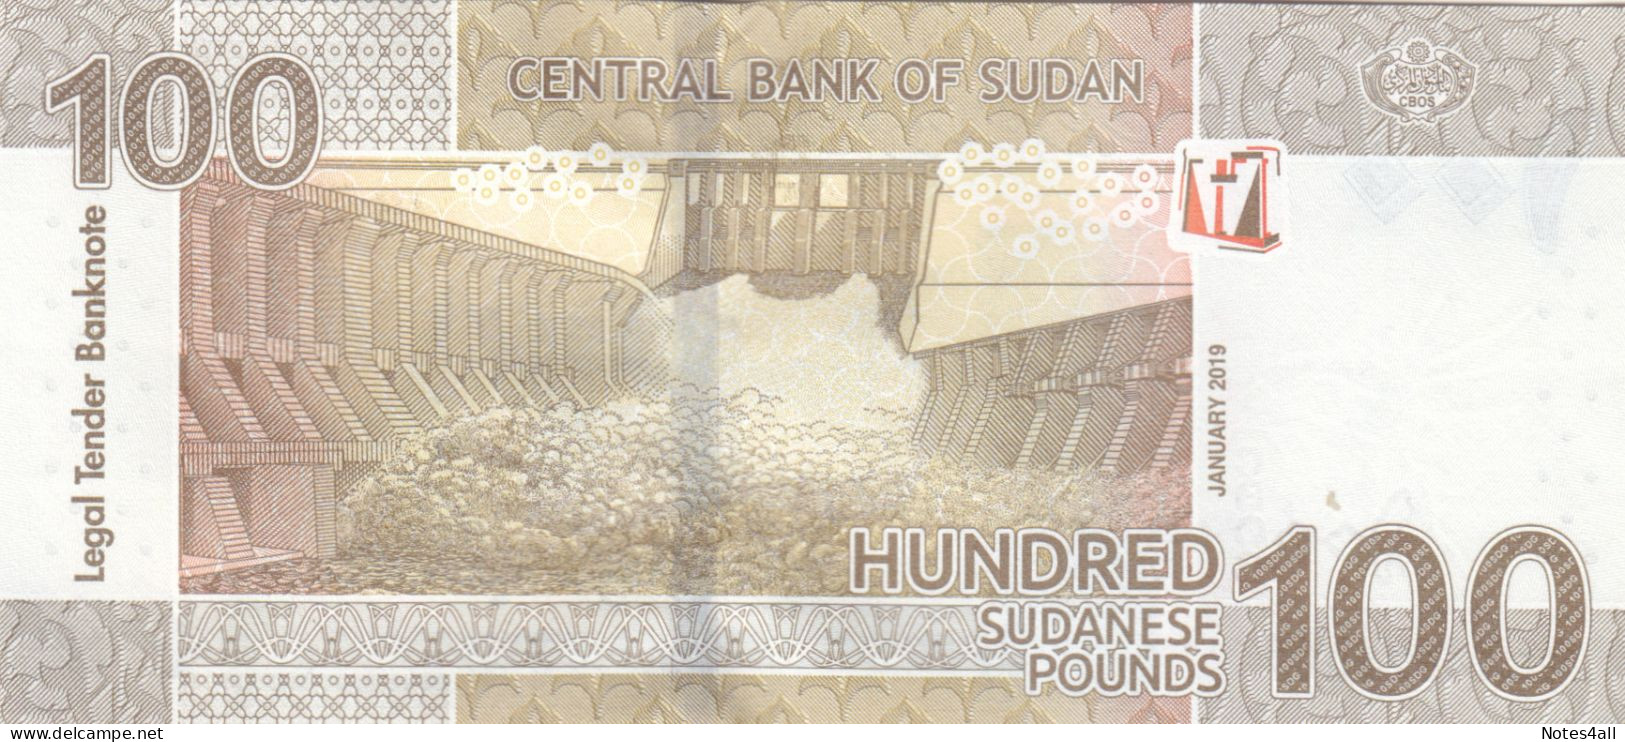 SUDAN 100 POUNDS 2019 P-77 UNC - Sudan